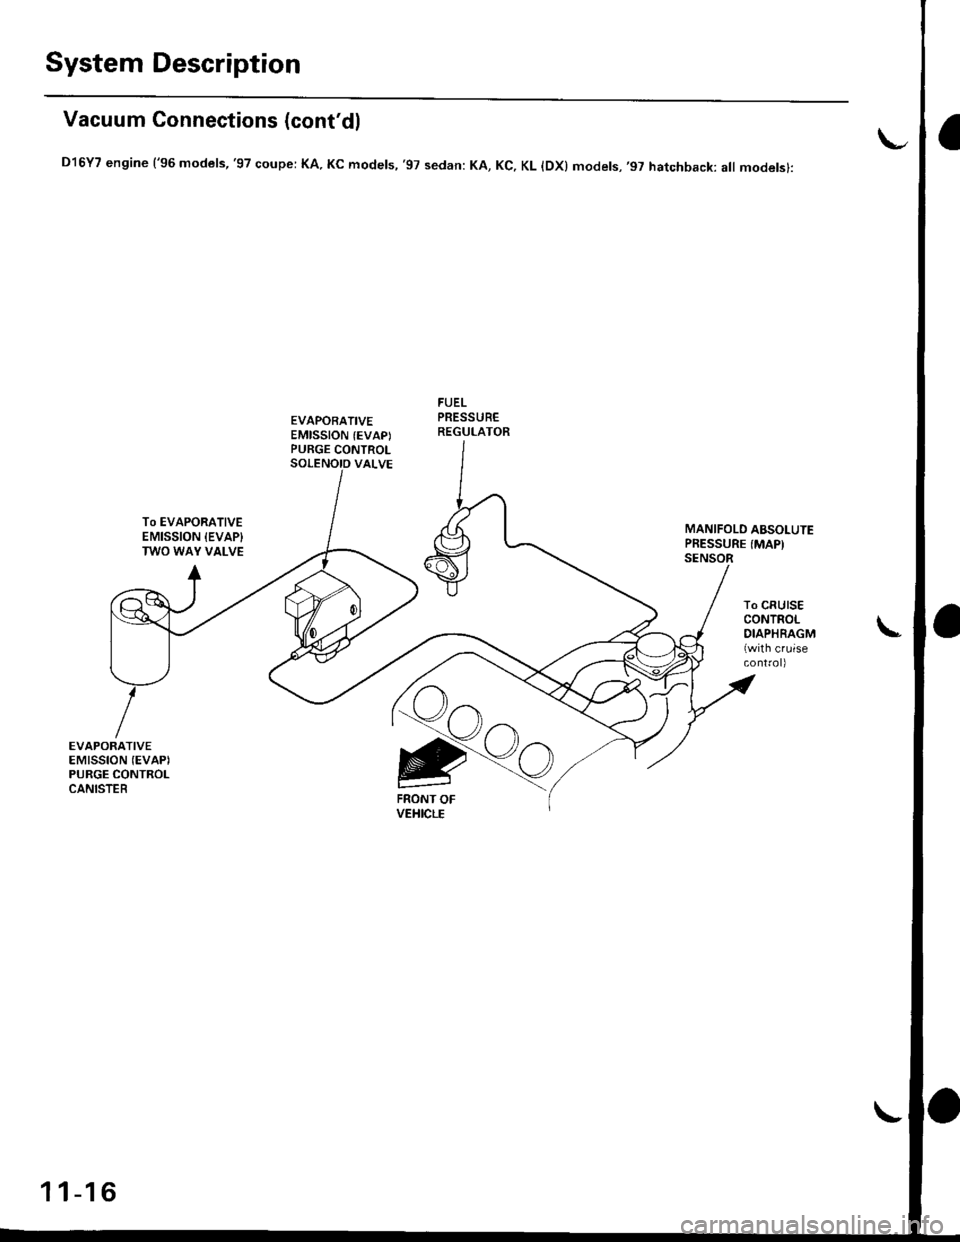 HONDA CIVIC 1997 6.G User Guide System Description
Vacuum Connections (contdl
D16Y7 engine (96 models,97 coupe: KA. Kc models, 97 sedan: KA, Kc, KL lDx) models,97 hatchback: all modelsl:
EVAPORATIVEEMISSION (EVAPIPURGE CONTROL
